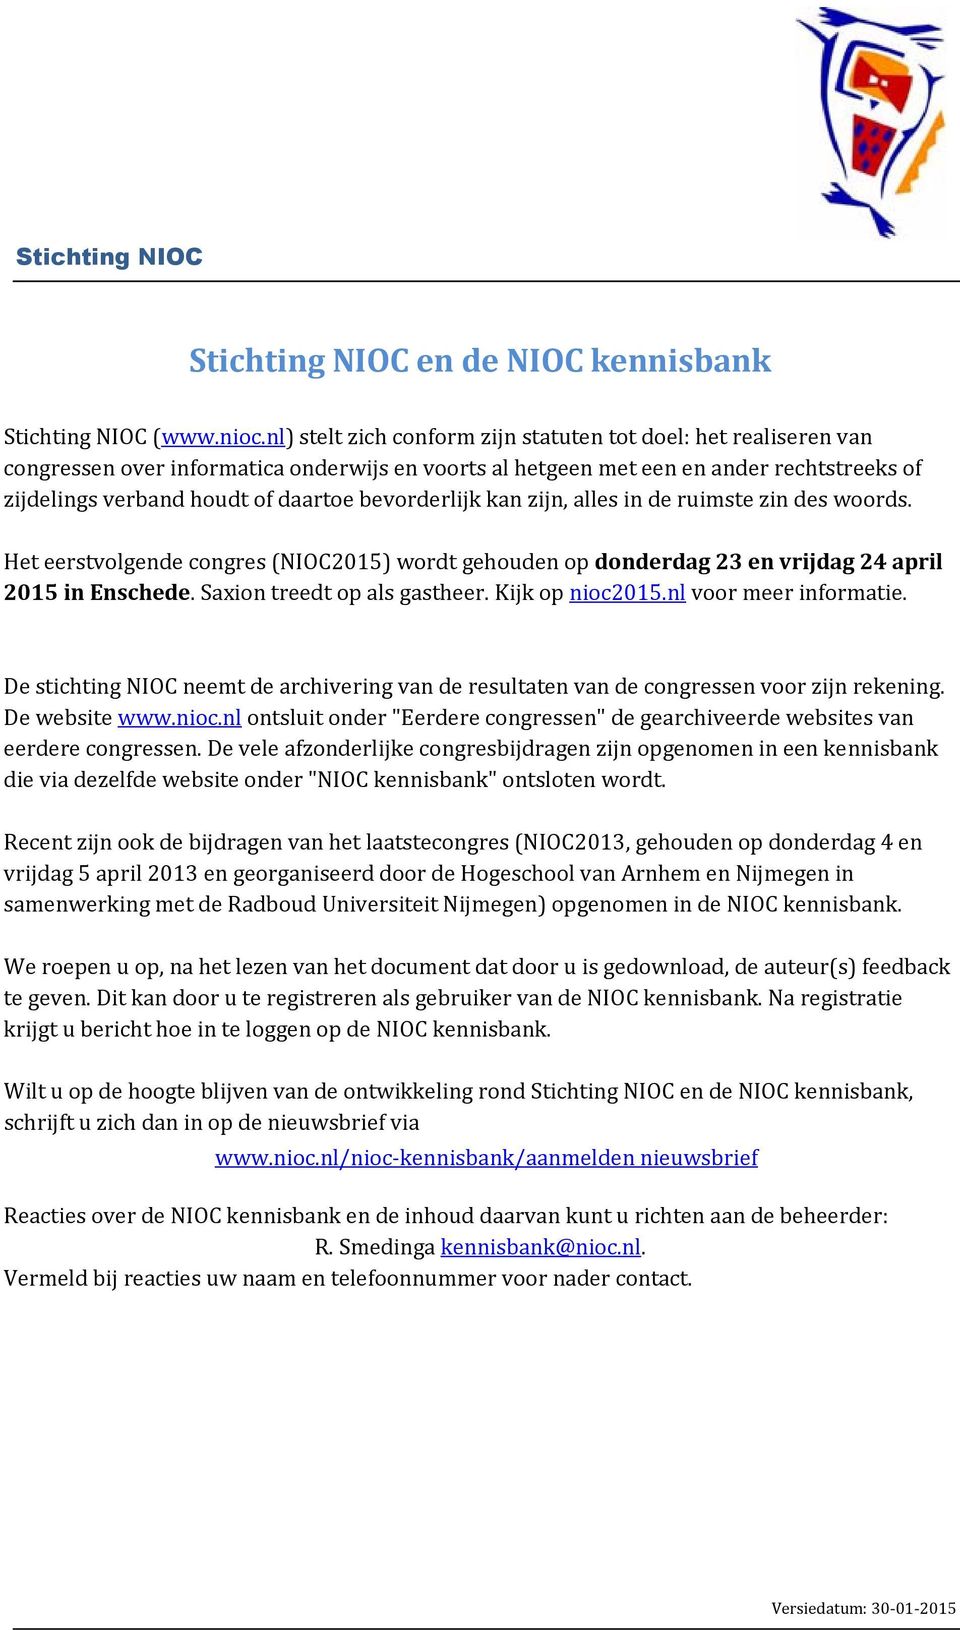 zijn, alles in de ruimse zin des woords. He eersvolgende congres (NIOC2015) word gehouden op donderdag 23 en vrijdag 24 april 2015 in Enschede. Saxion reed op als gasheer. Kijk op nioc2015.